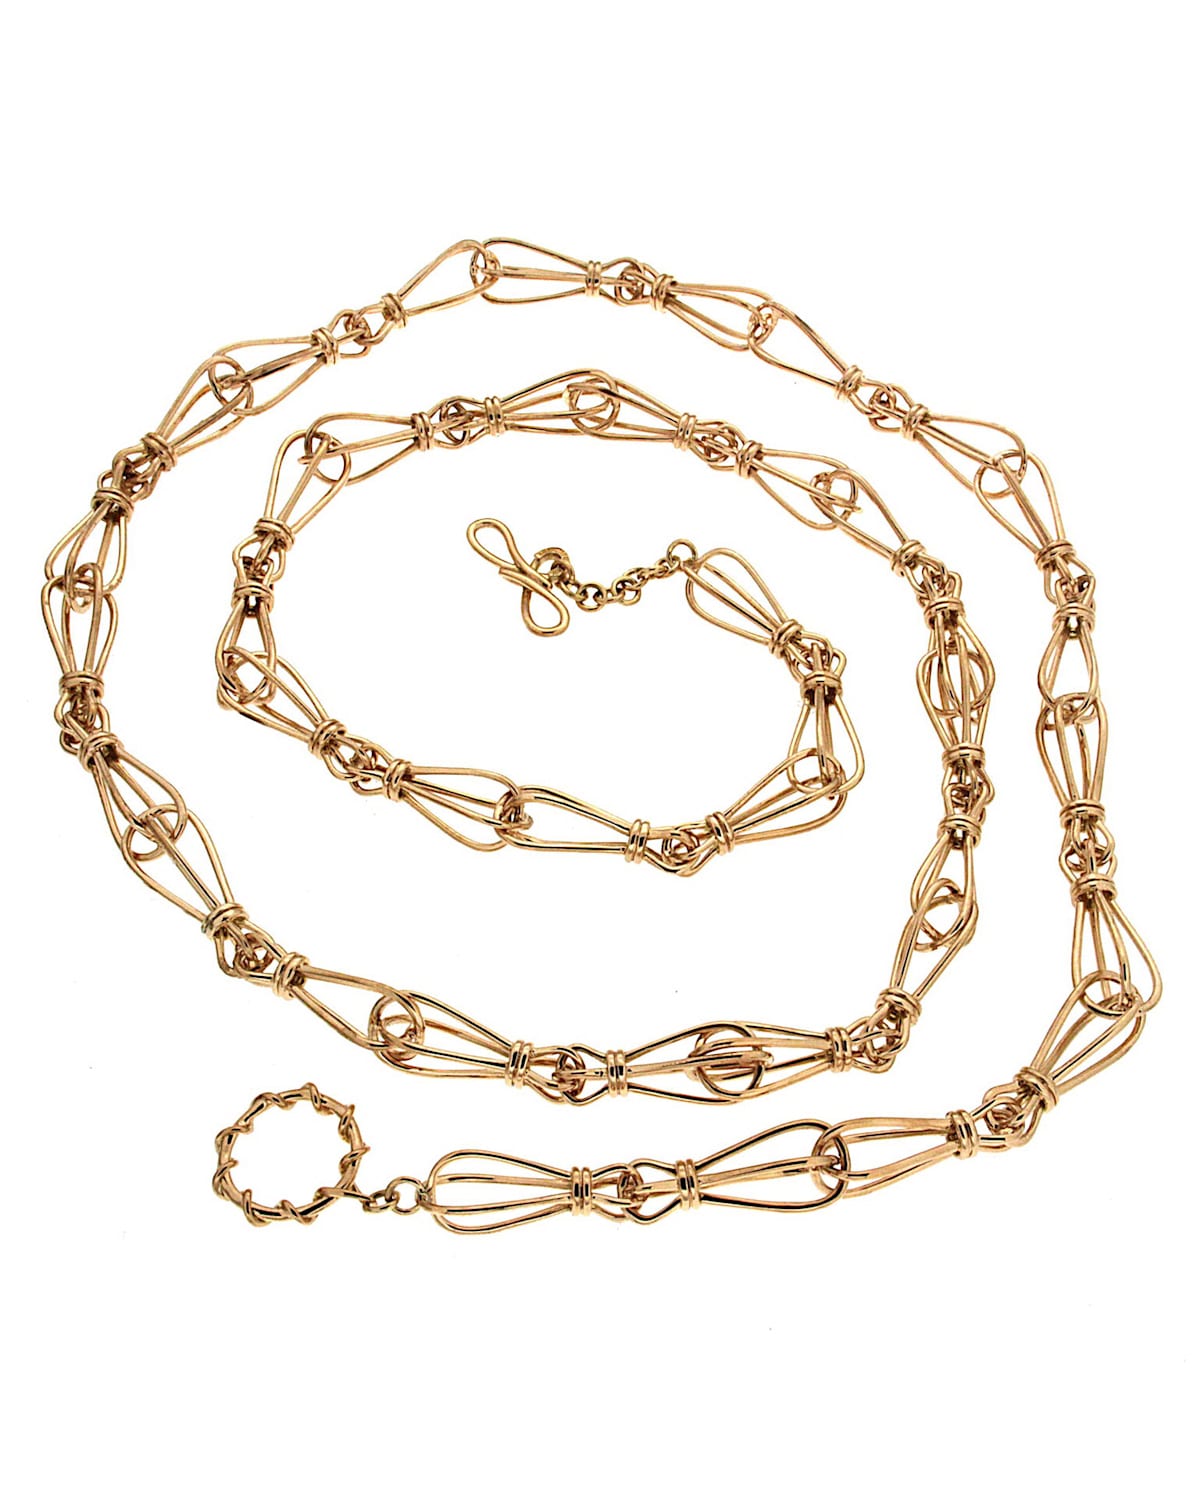 18k Caged-Link Necklace, 36"L